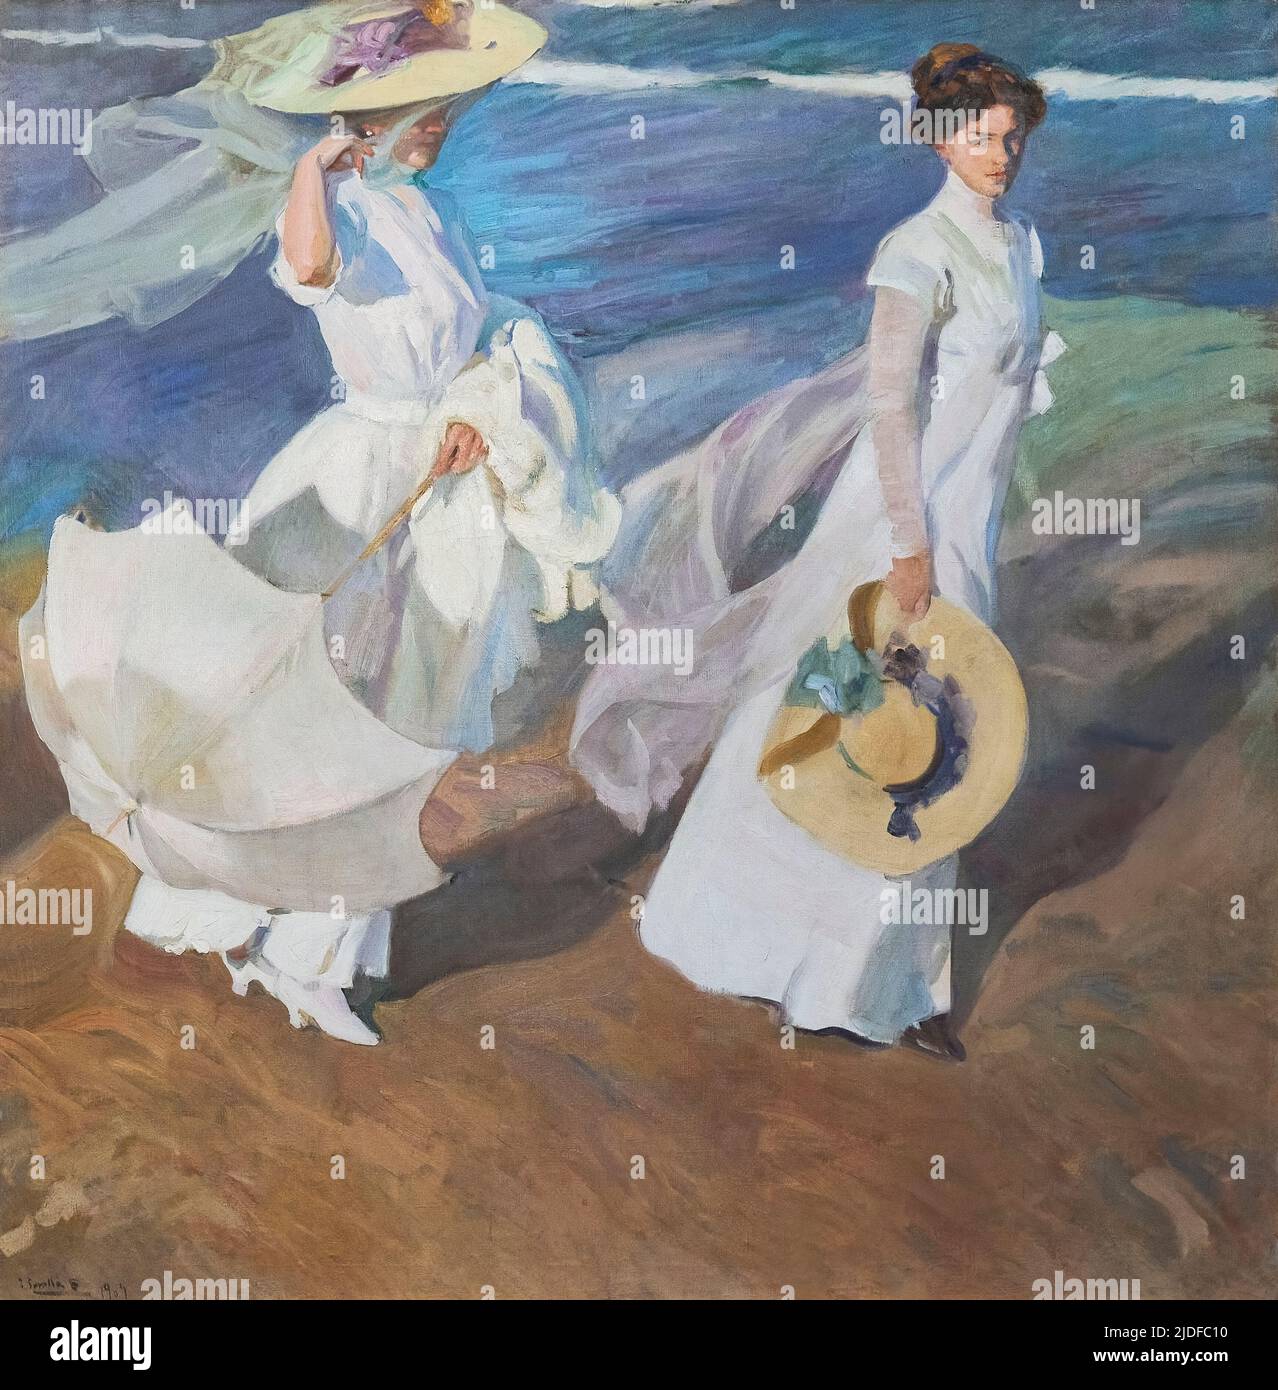 Joaquin Sorolla y Bastida (1863-1923). Promenade le long de la mer. (Paseo a orillas del mar). 1909. Huile sur toile. 205 x 200 cm. Joaquin Sorolla y Banque D'Images